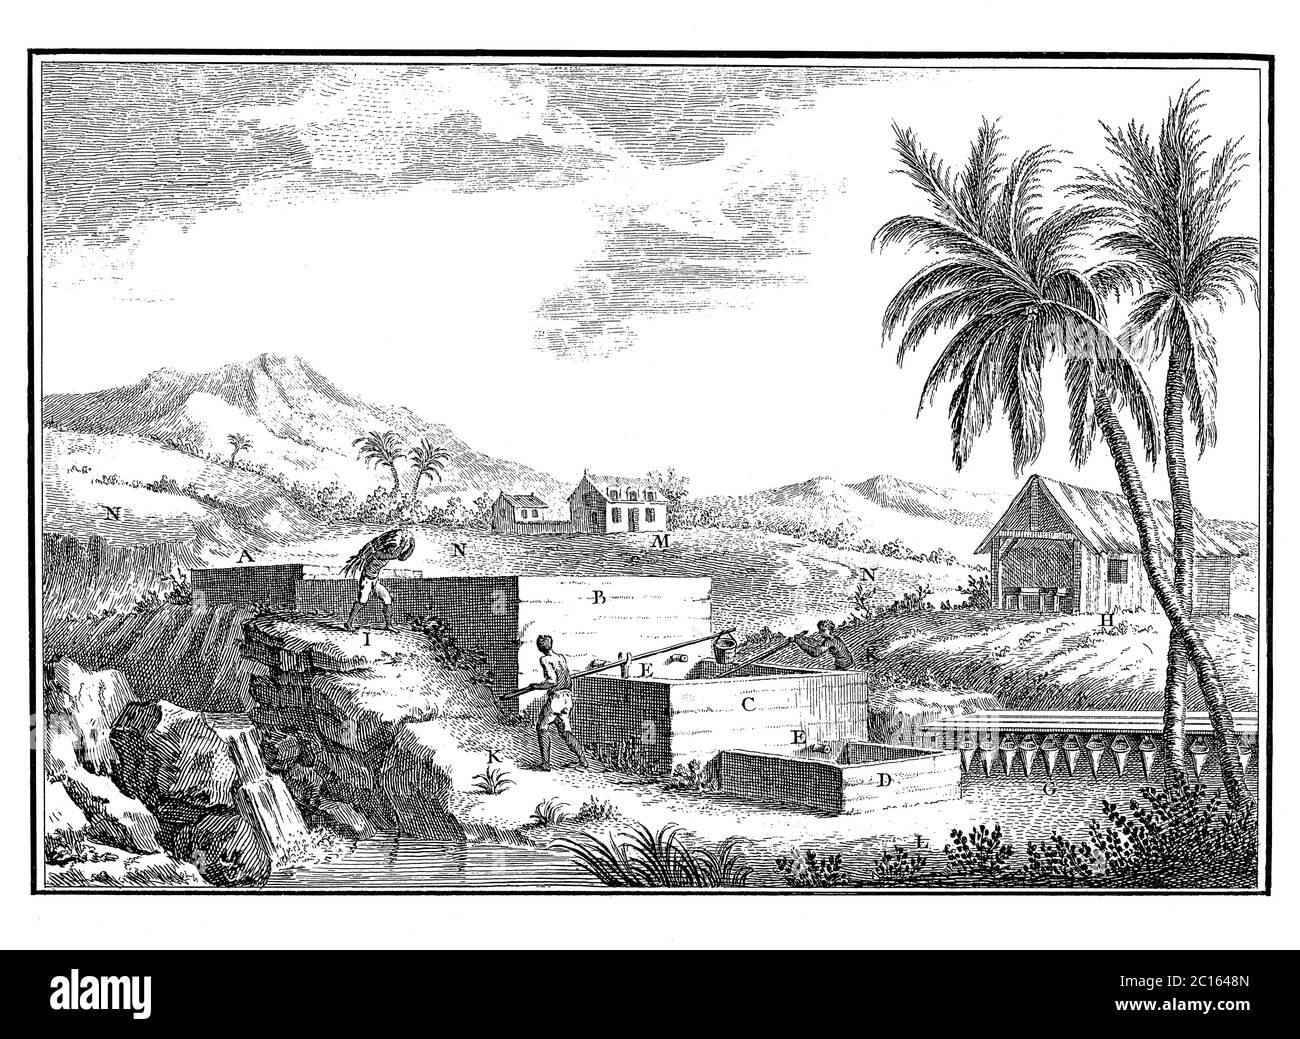 Illustration du XVIIIe siècle d'une plantation d'indigo dans les Antilles. Publié dans 'A Diderot Pictorial Encyclopedia of Trades and Industry. Fabrication Banque D'Images